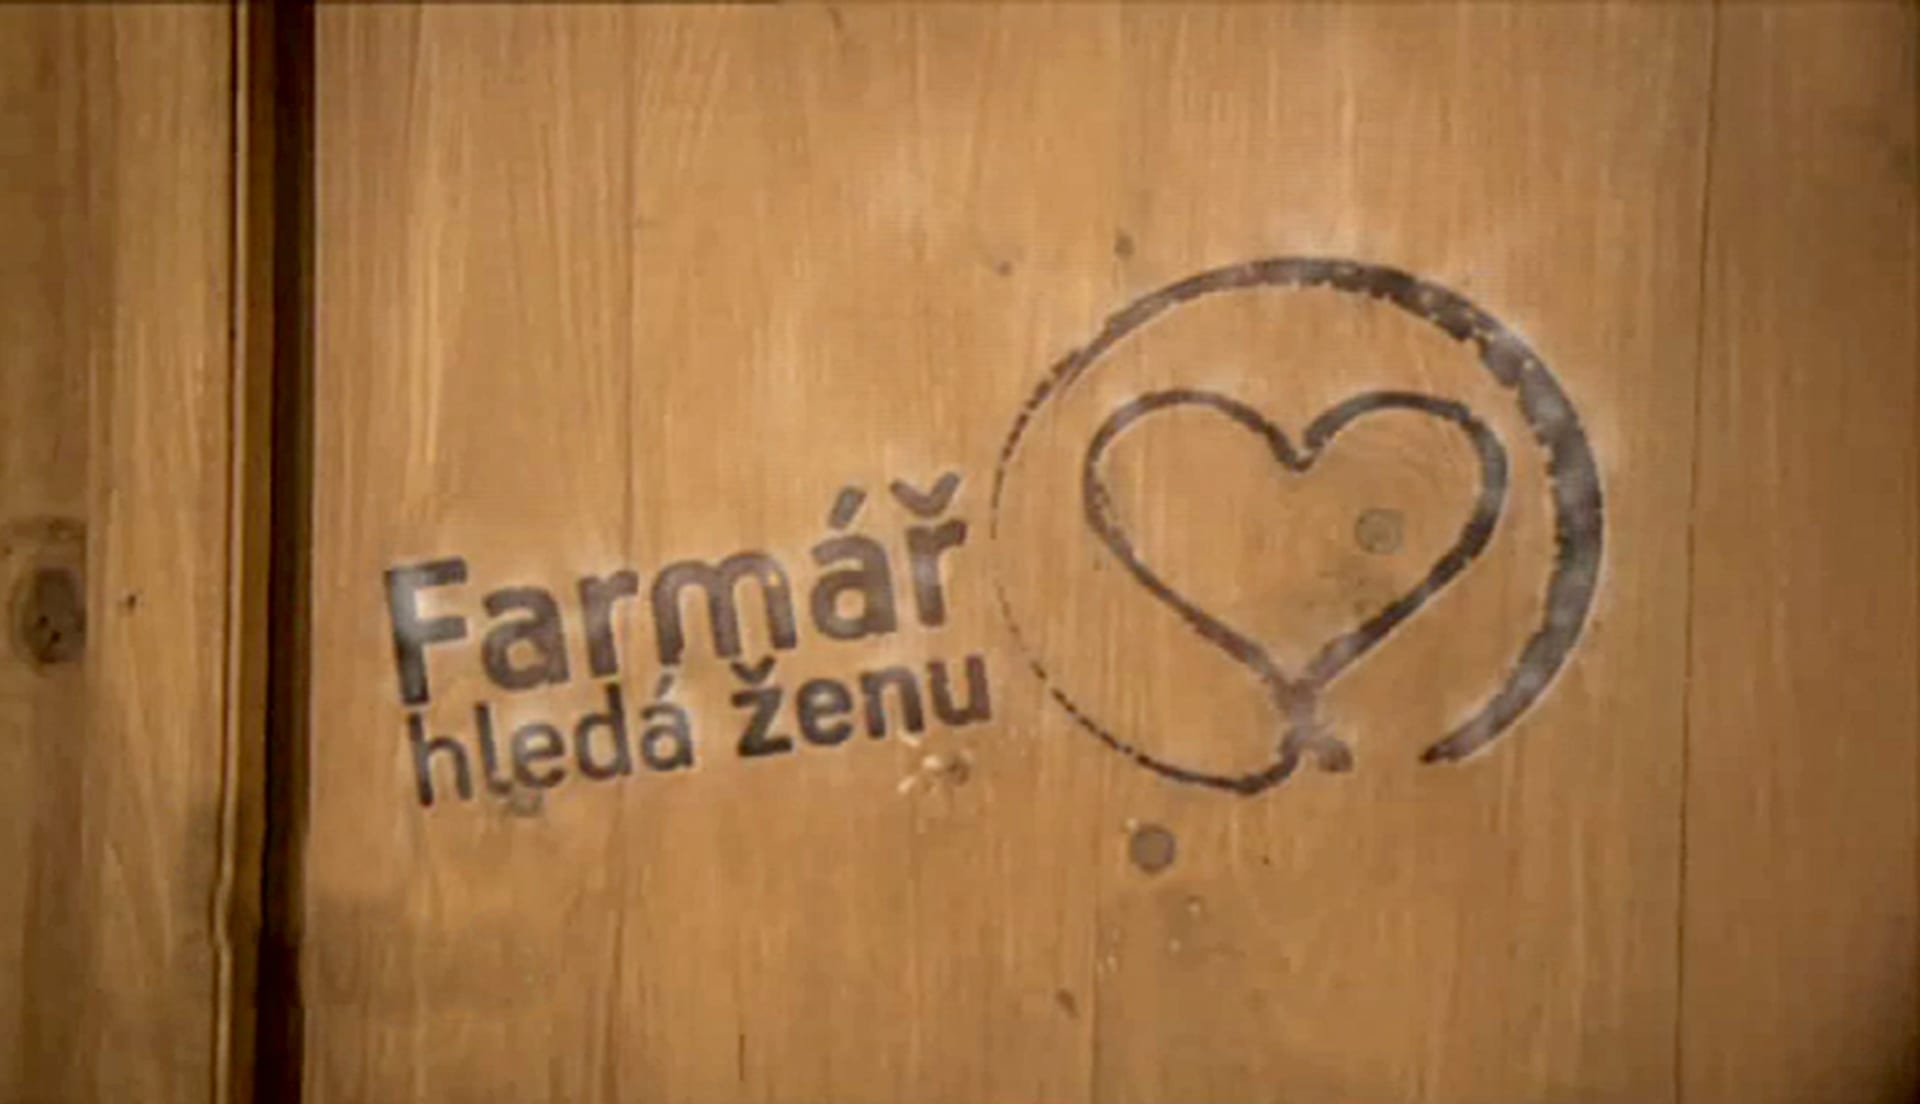 Farmar hleda ženu - logo na dřevo